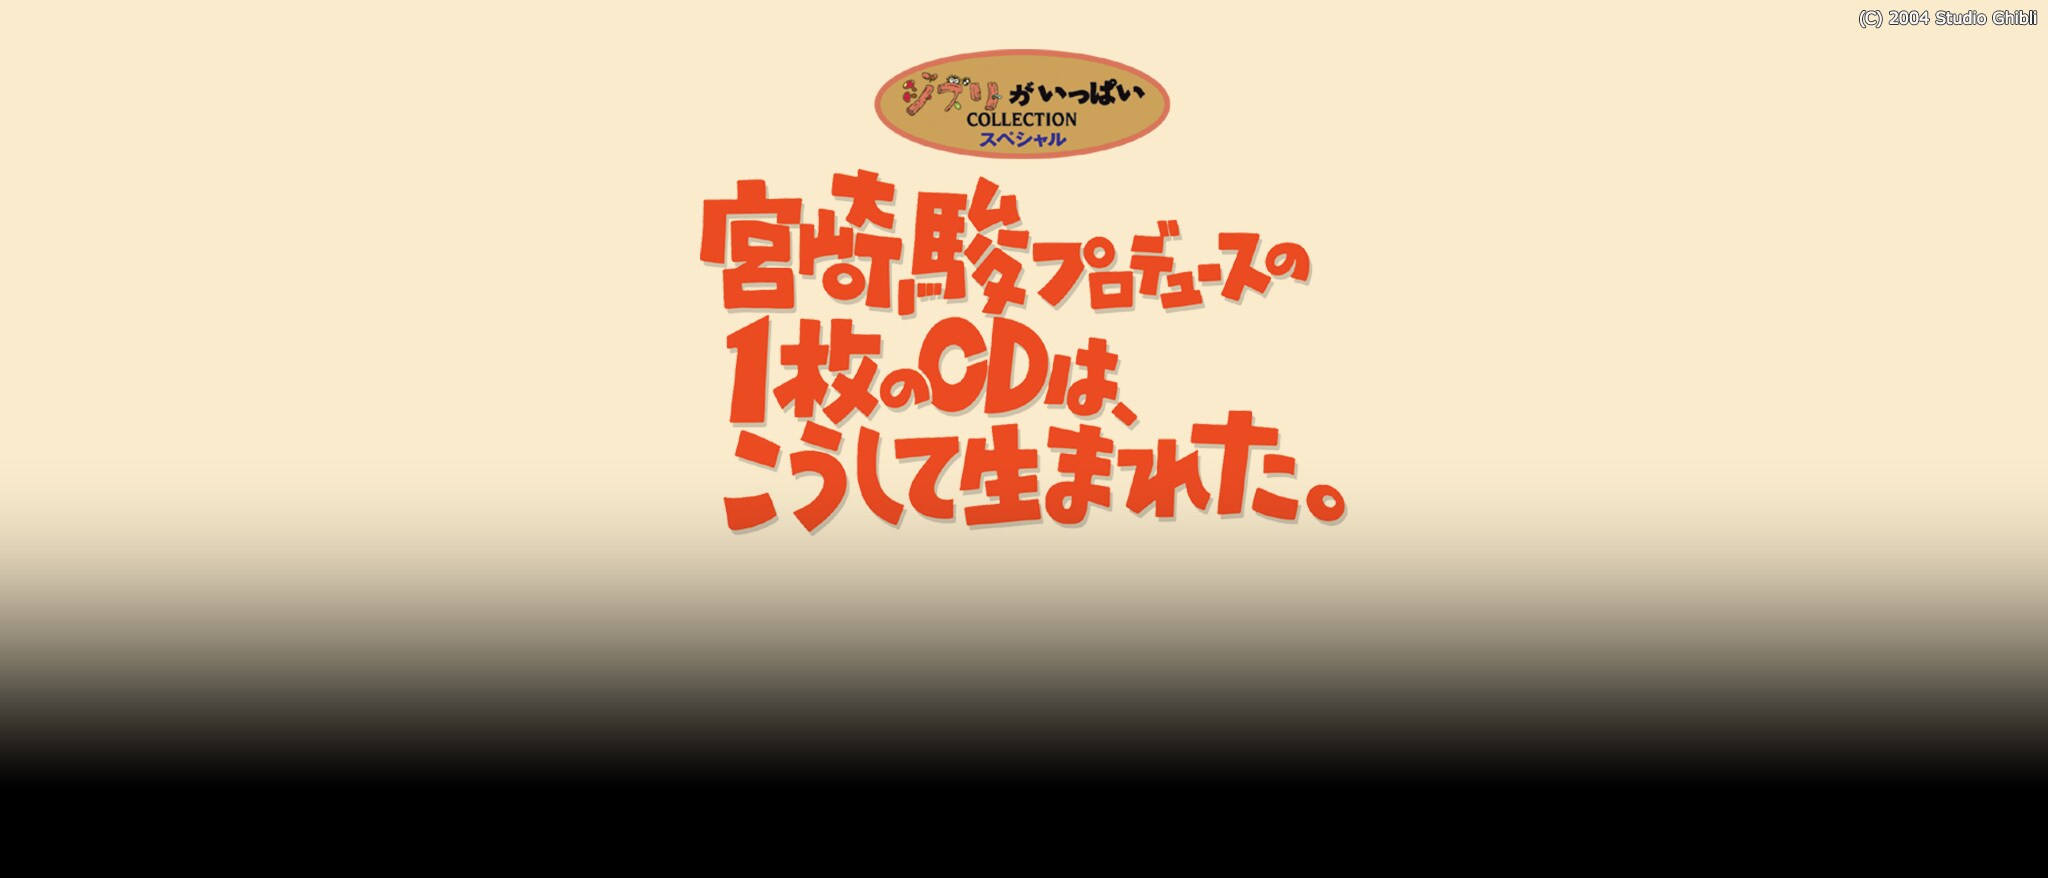 [FBO]宮崎駿プロデュースの1枚のCDは、こうして生まれた。